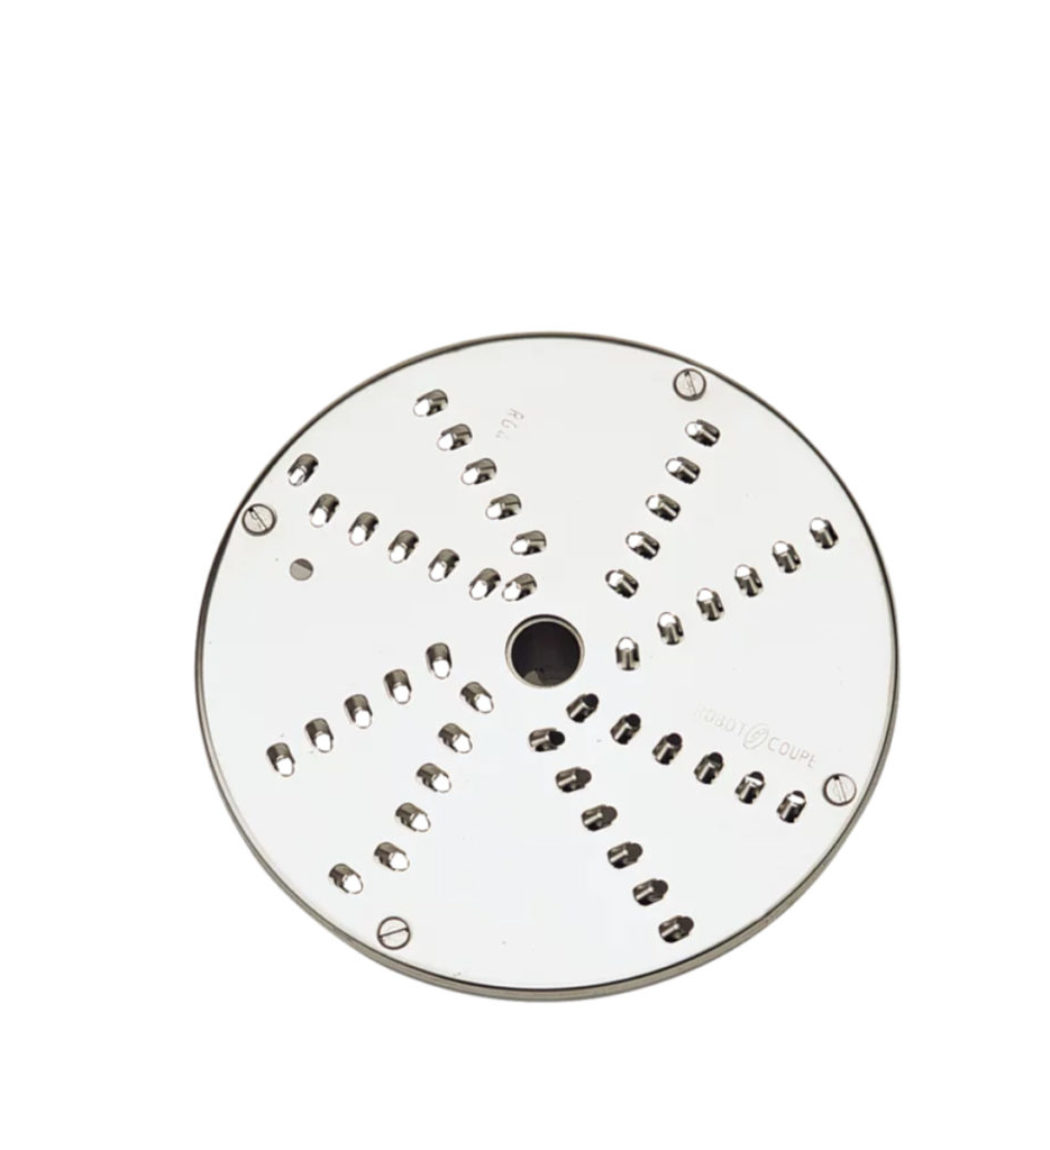 Strúhač 4 mm | Robot Coupe disk